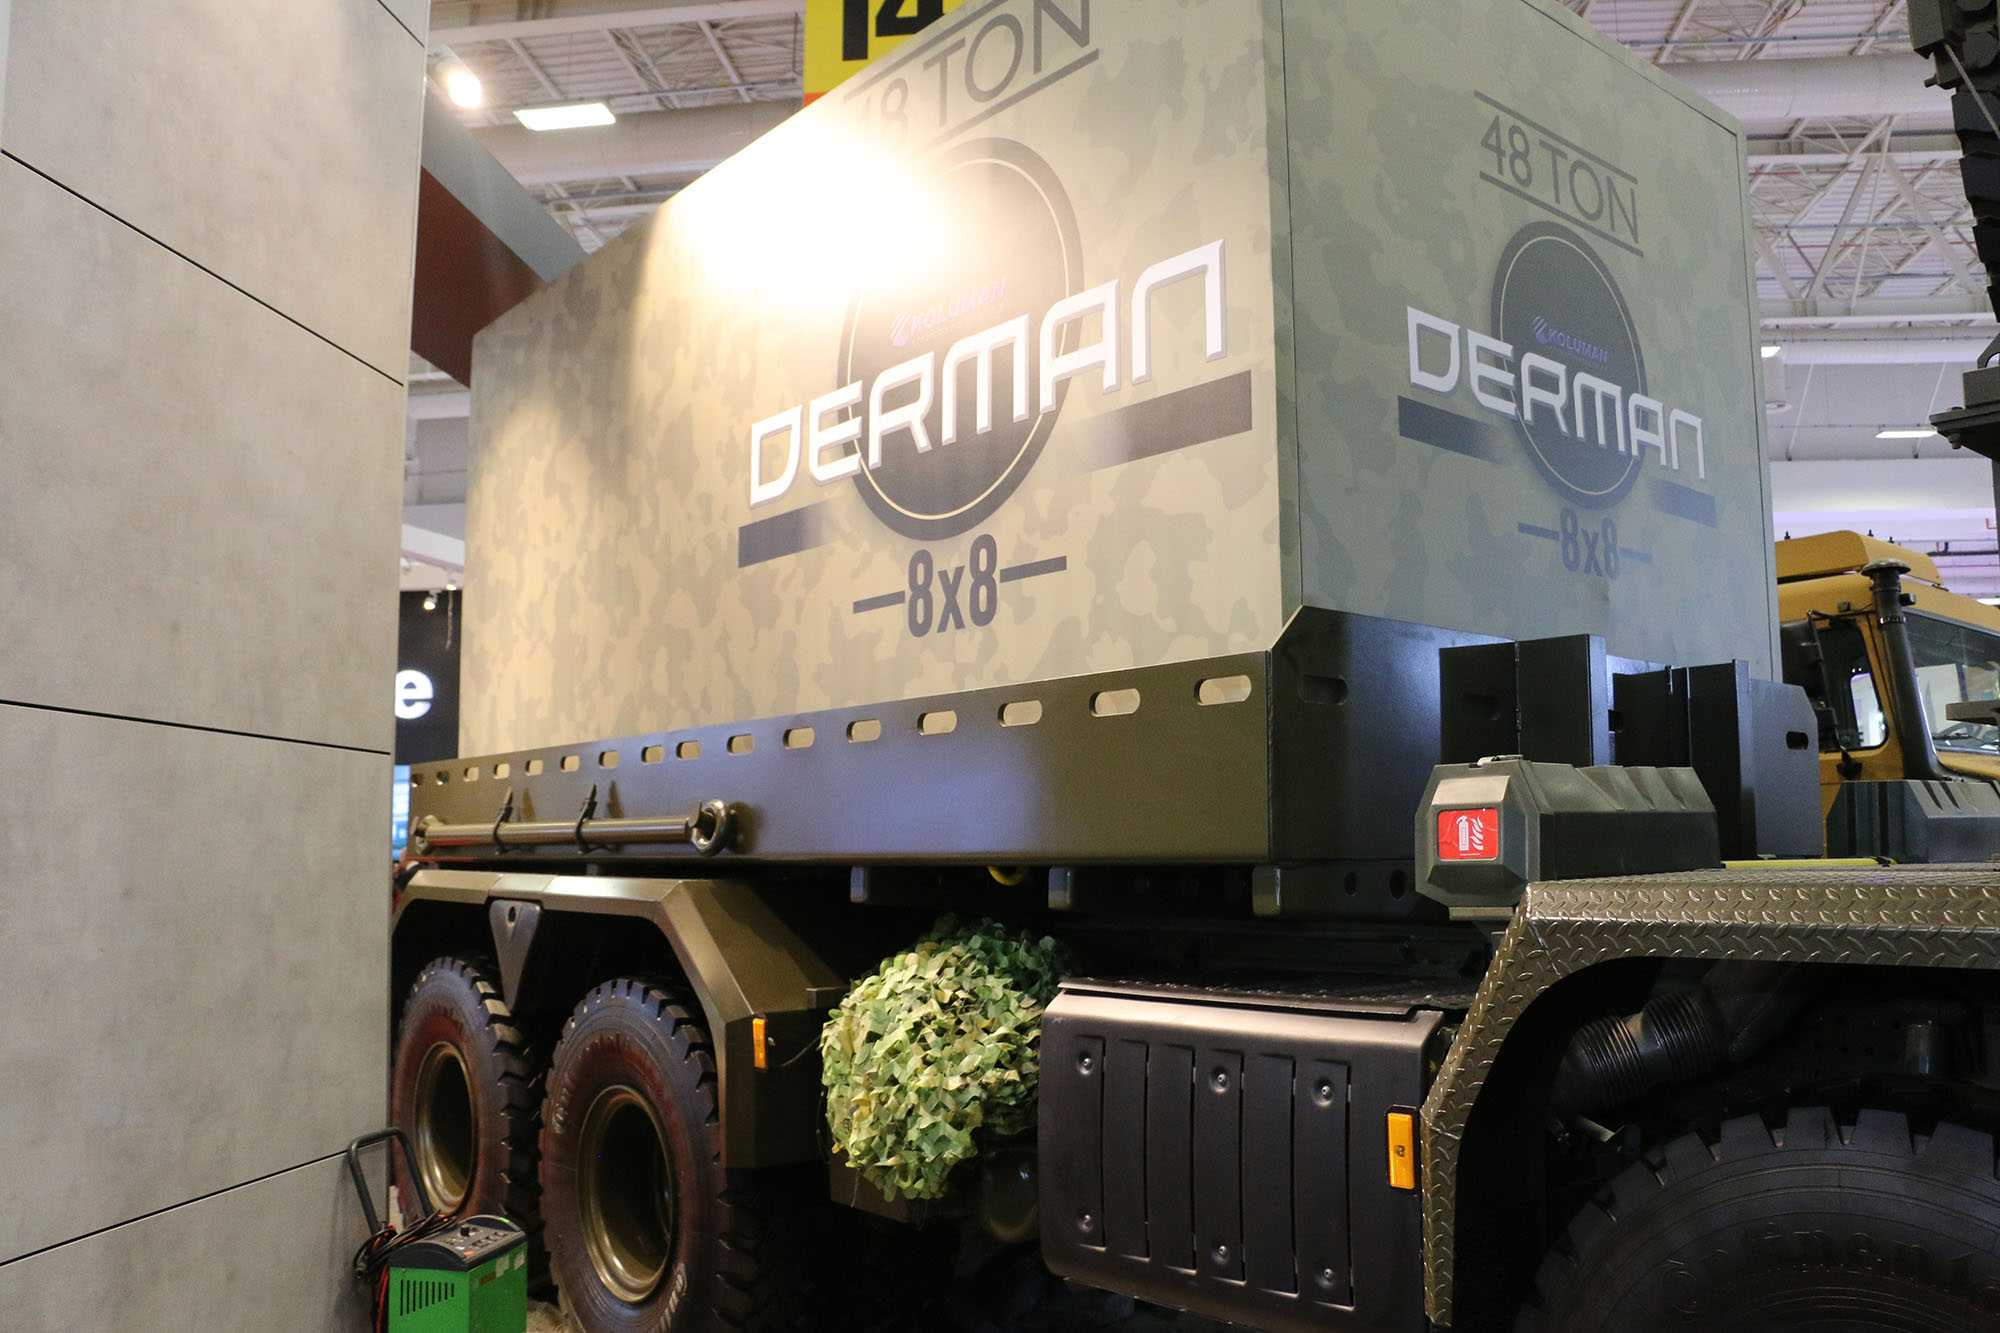 8x8 zırhlı askeri lojistik destek aracı "Derman"